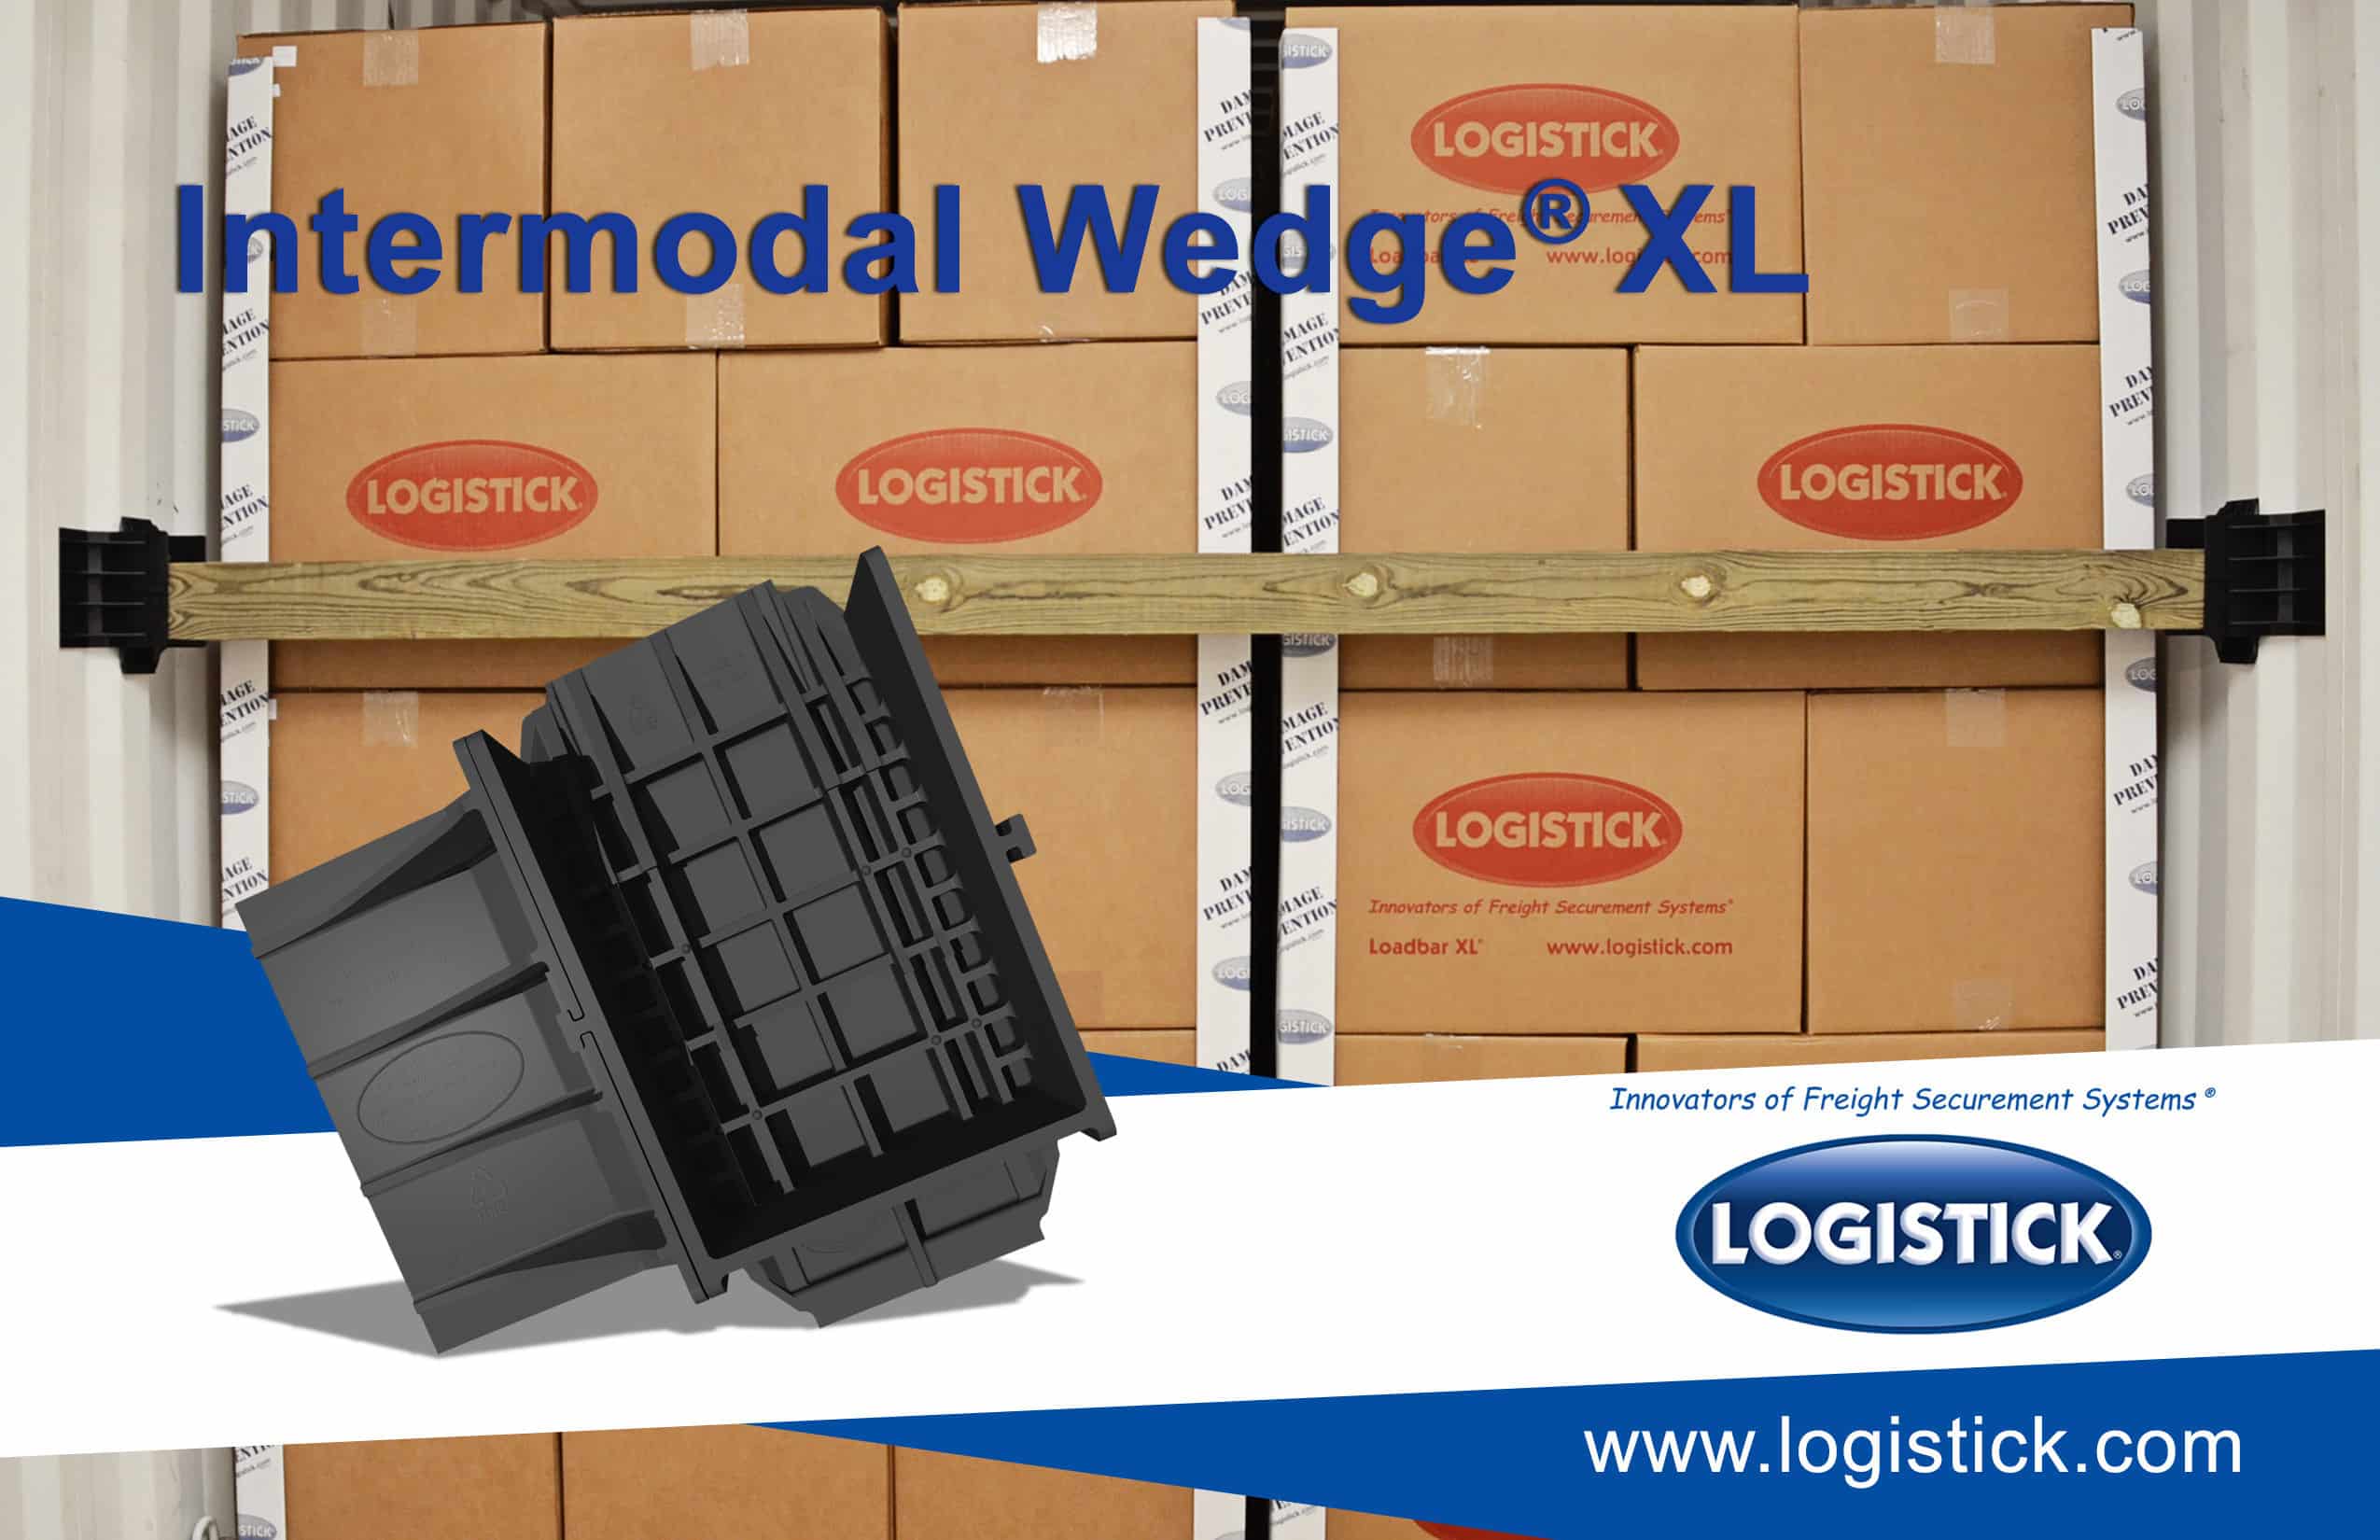 Intermodal Wedge XL